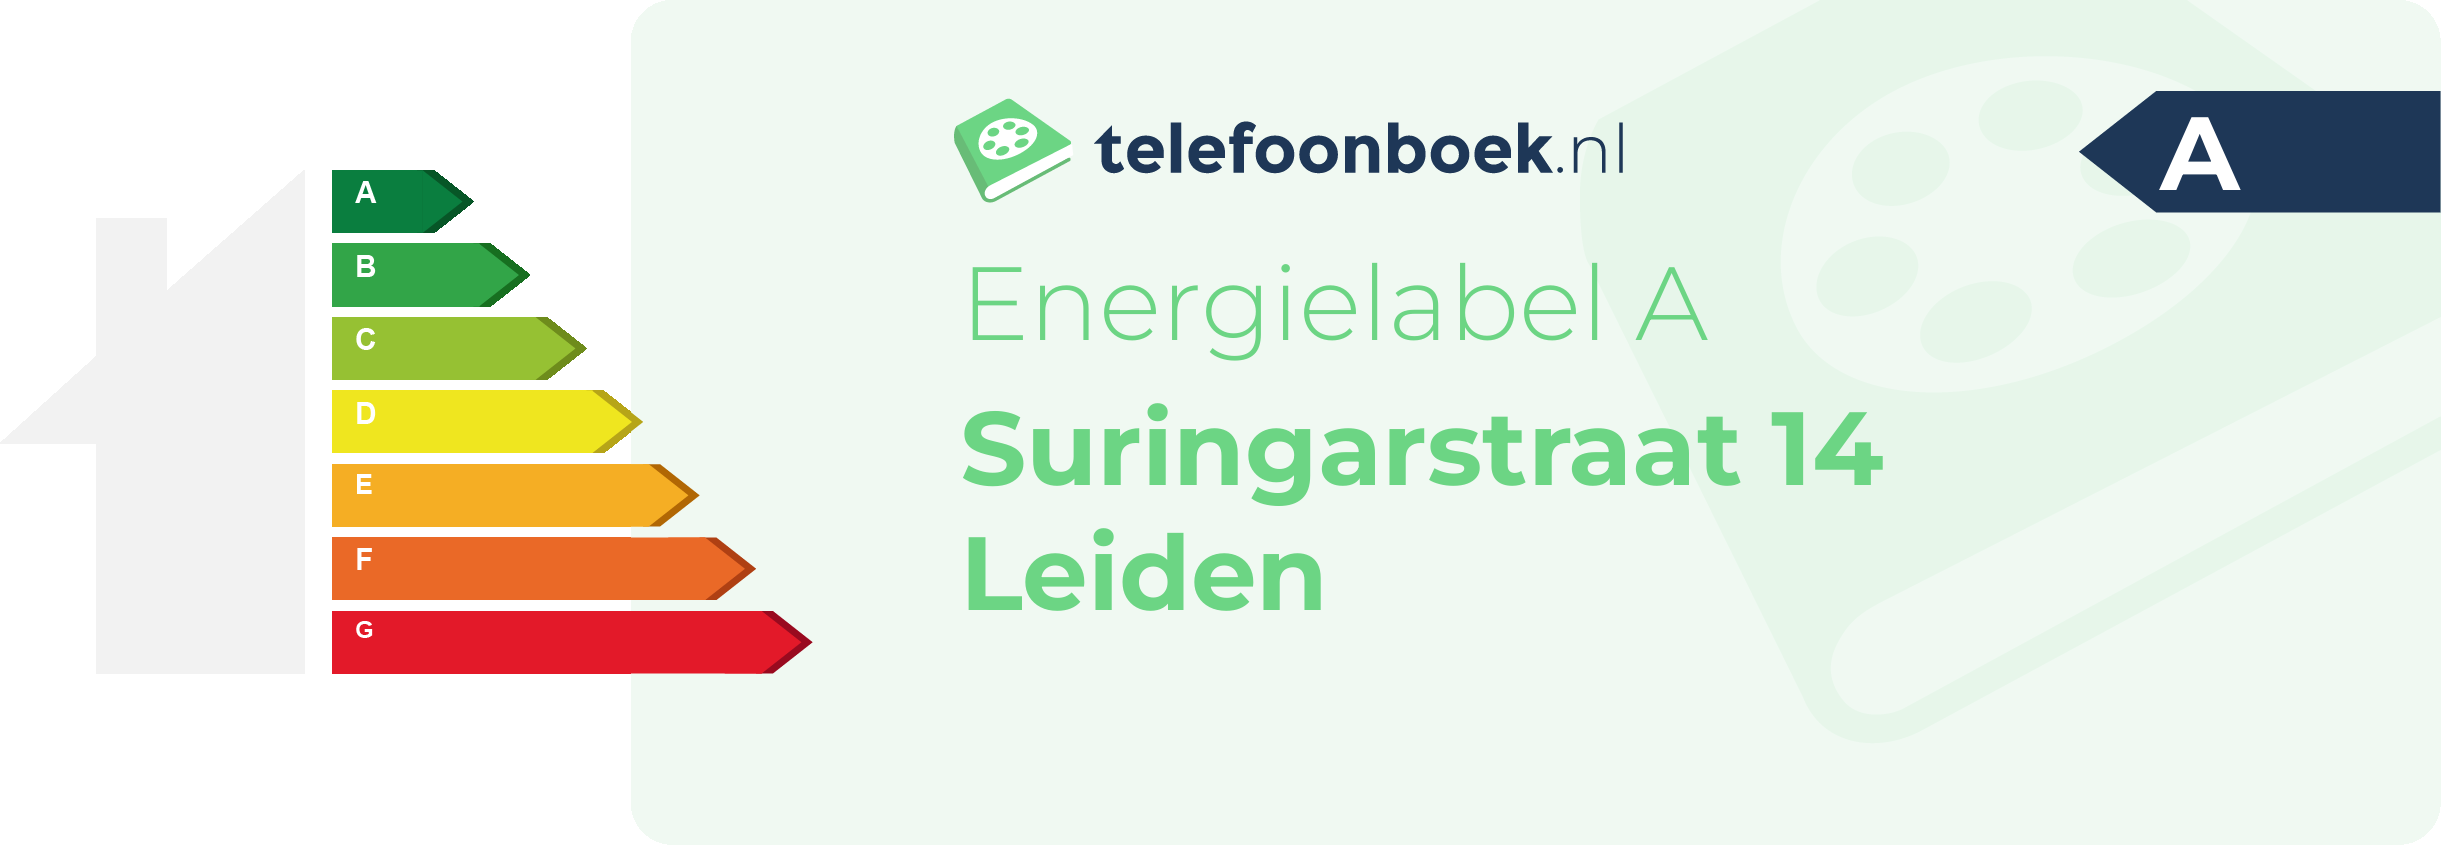 Energielabel Suringarstraat 14 Leiden